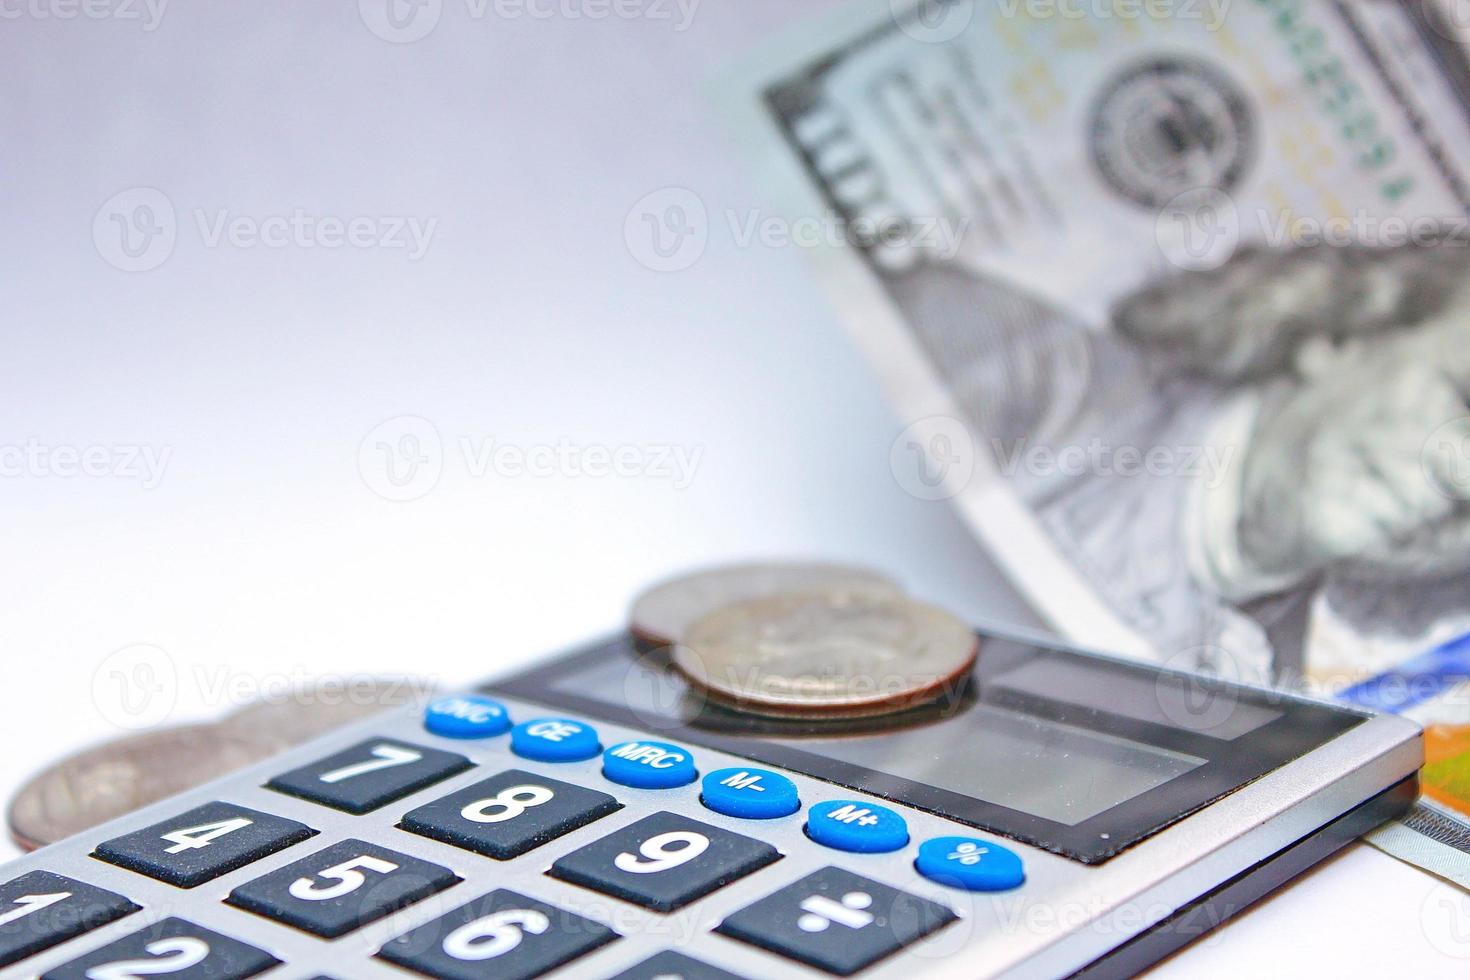 kalkylator och dollar räkningar är placerad på en vit tabell. foto